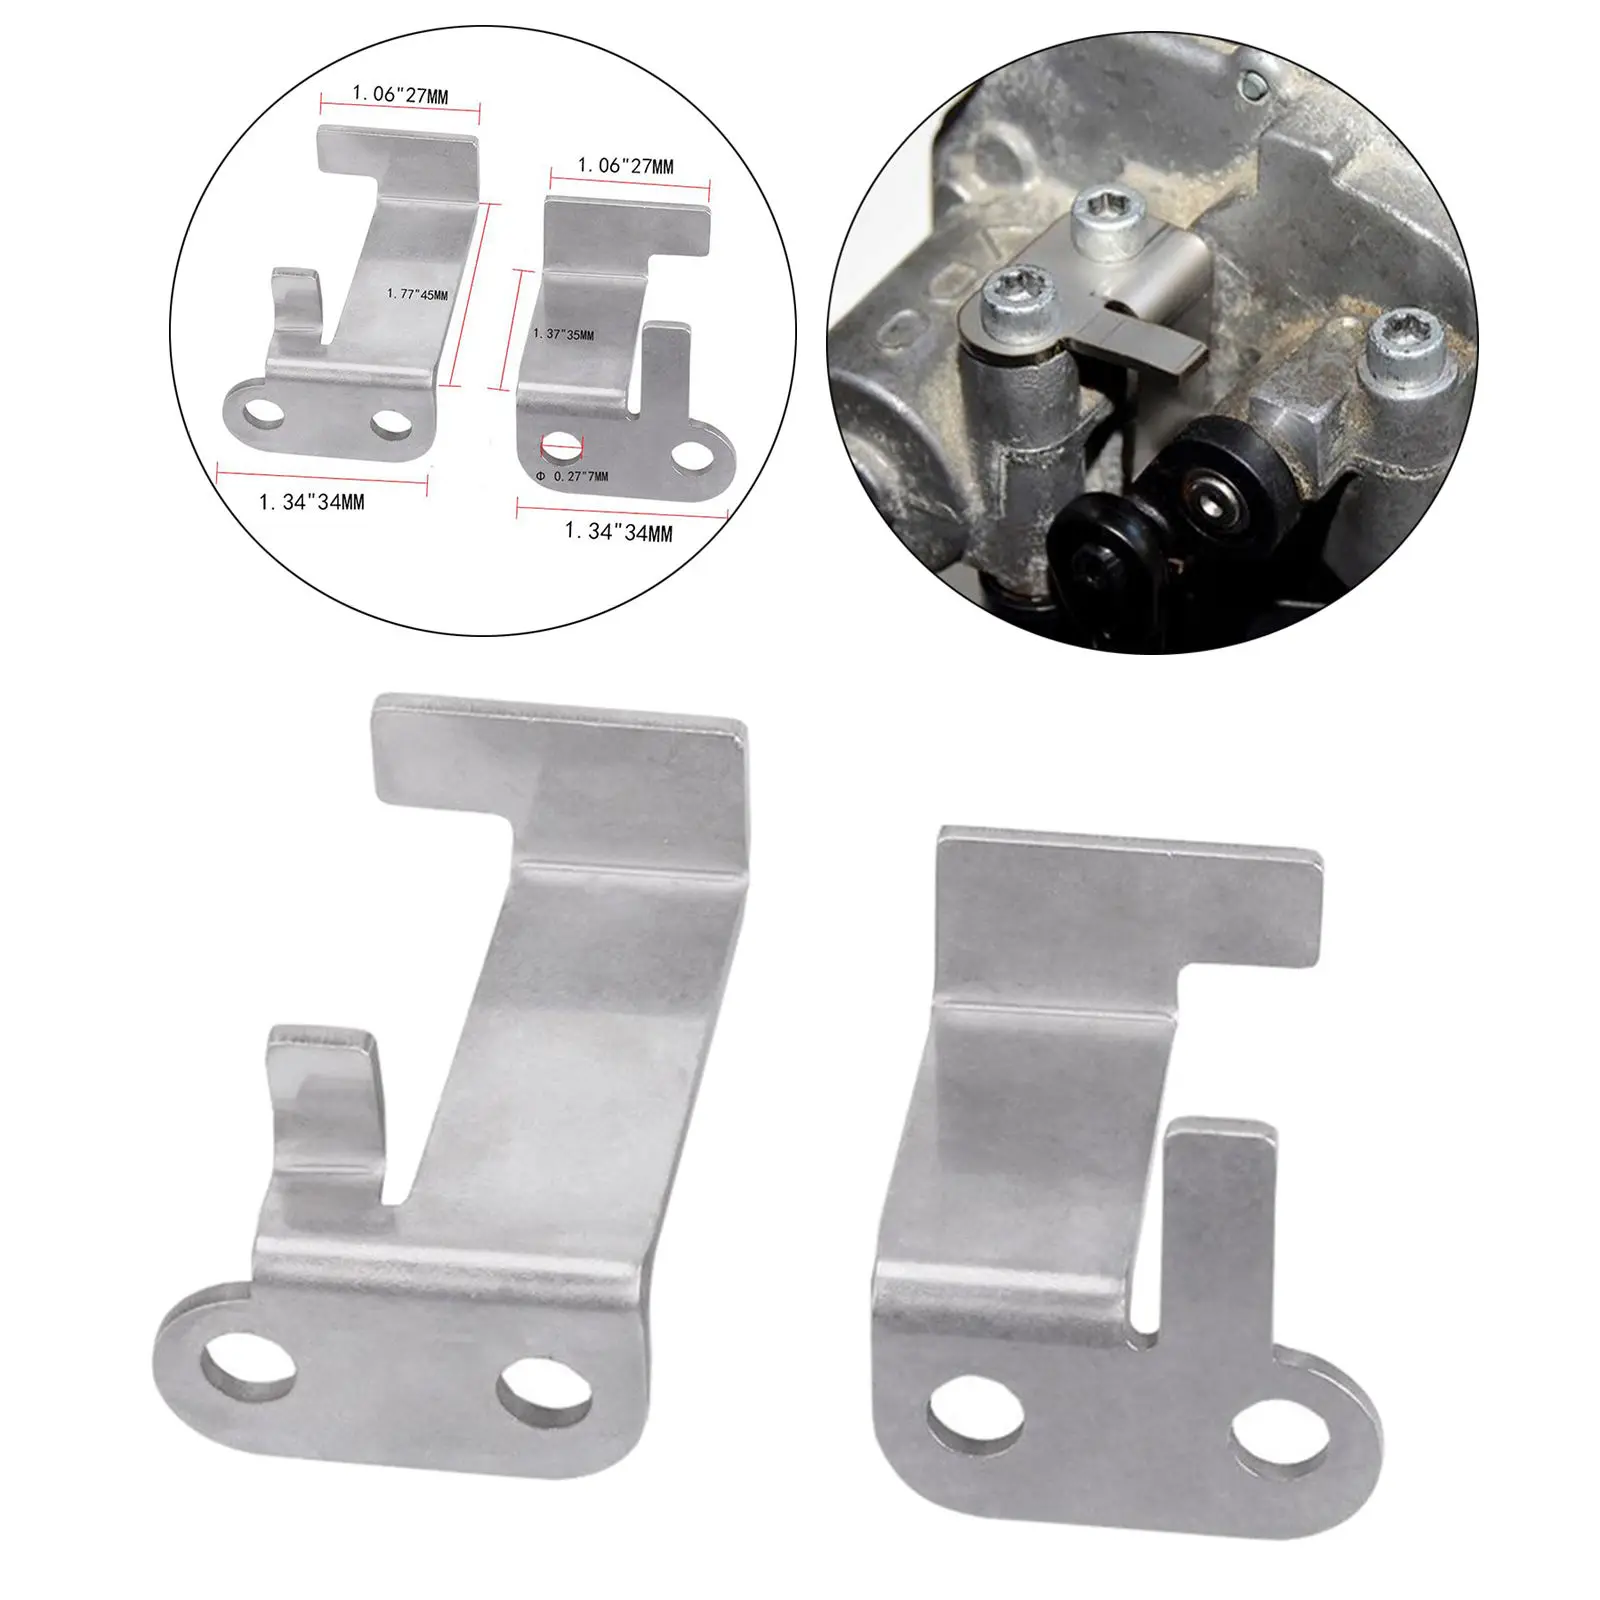 1 pair Repair Bracket Manifold Kit Car Repair 059129086 For VW Replace Accessories EM1023